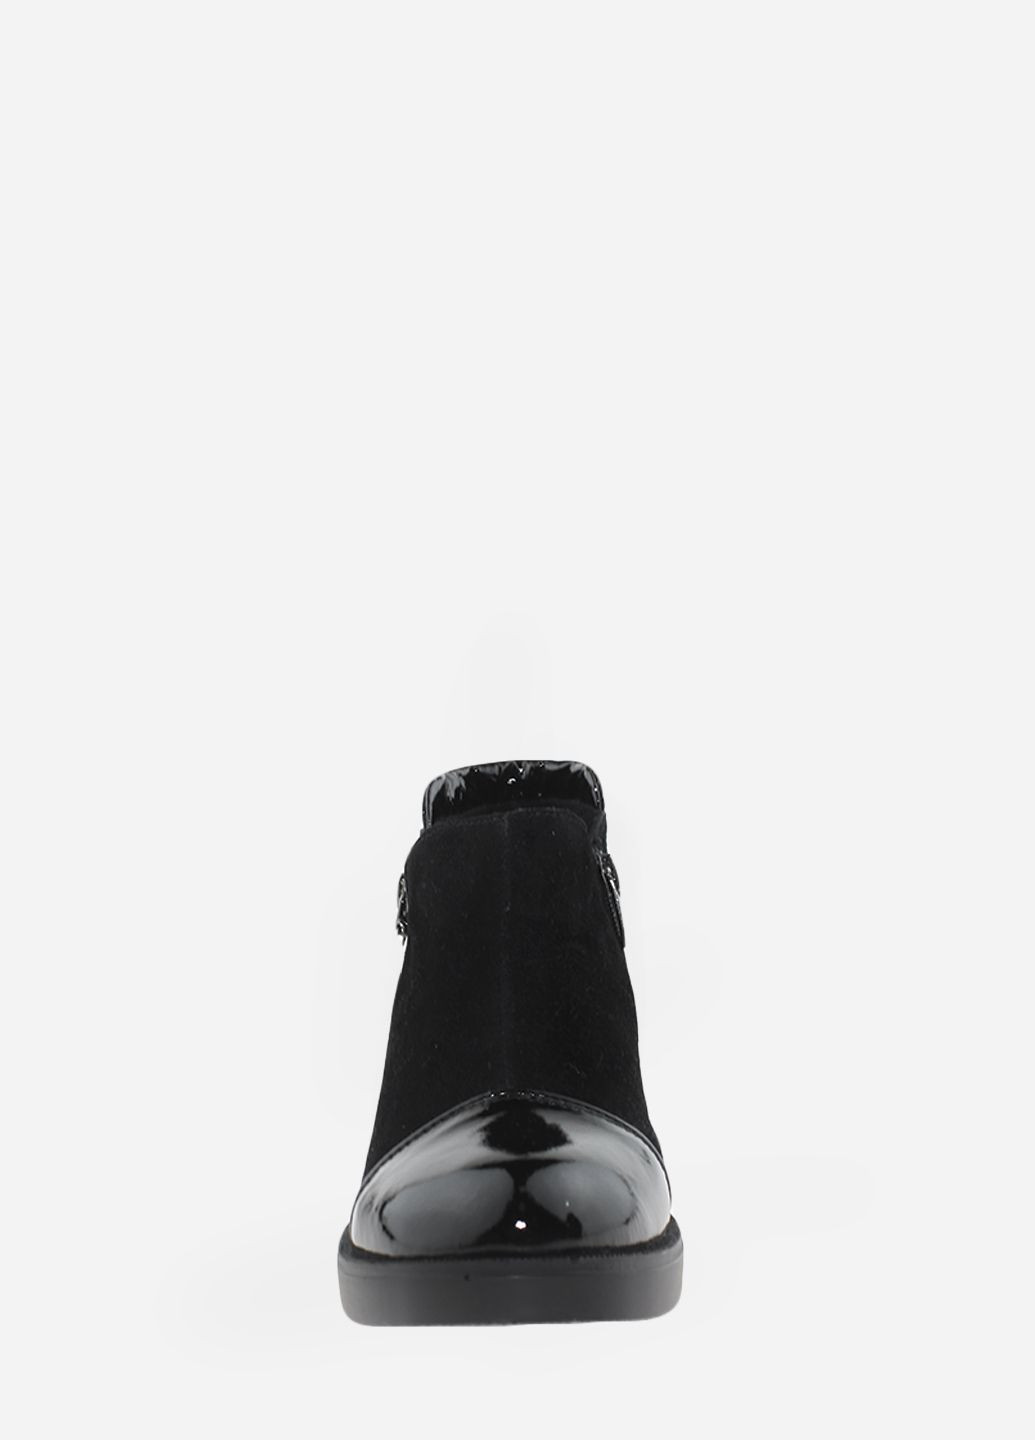 Осенние ботинки ro18210-5-11 черный Olevit из натуральной замши